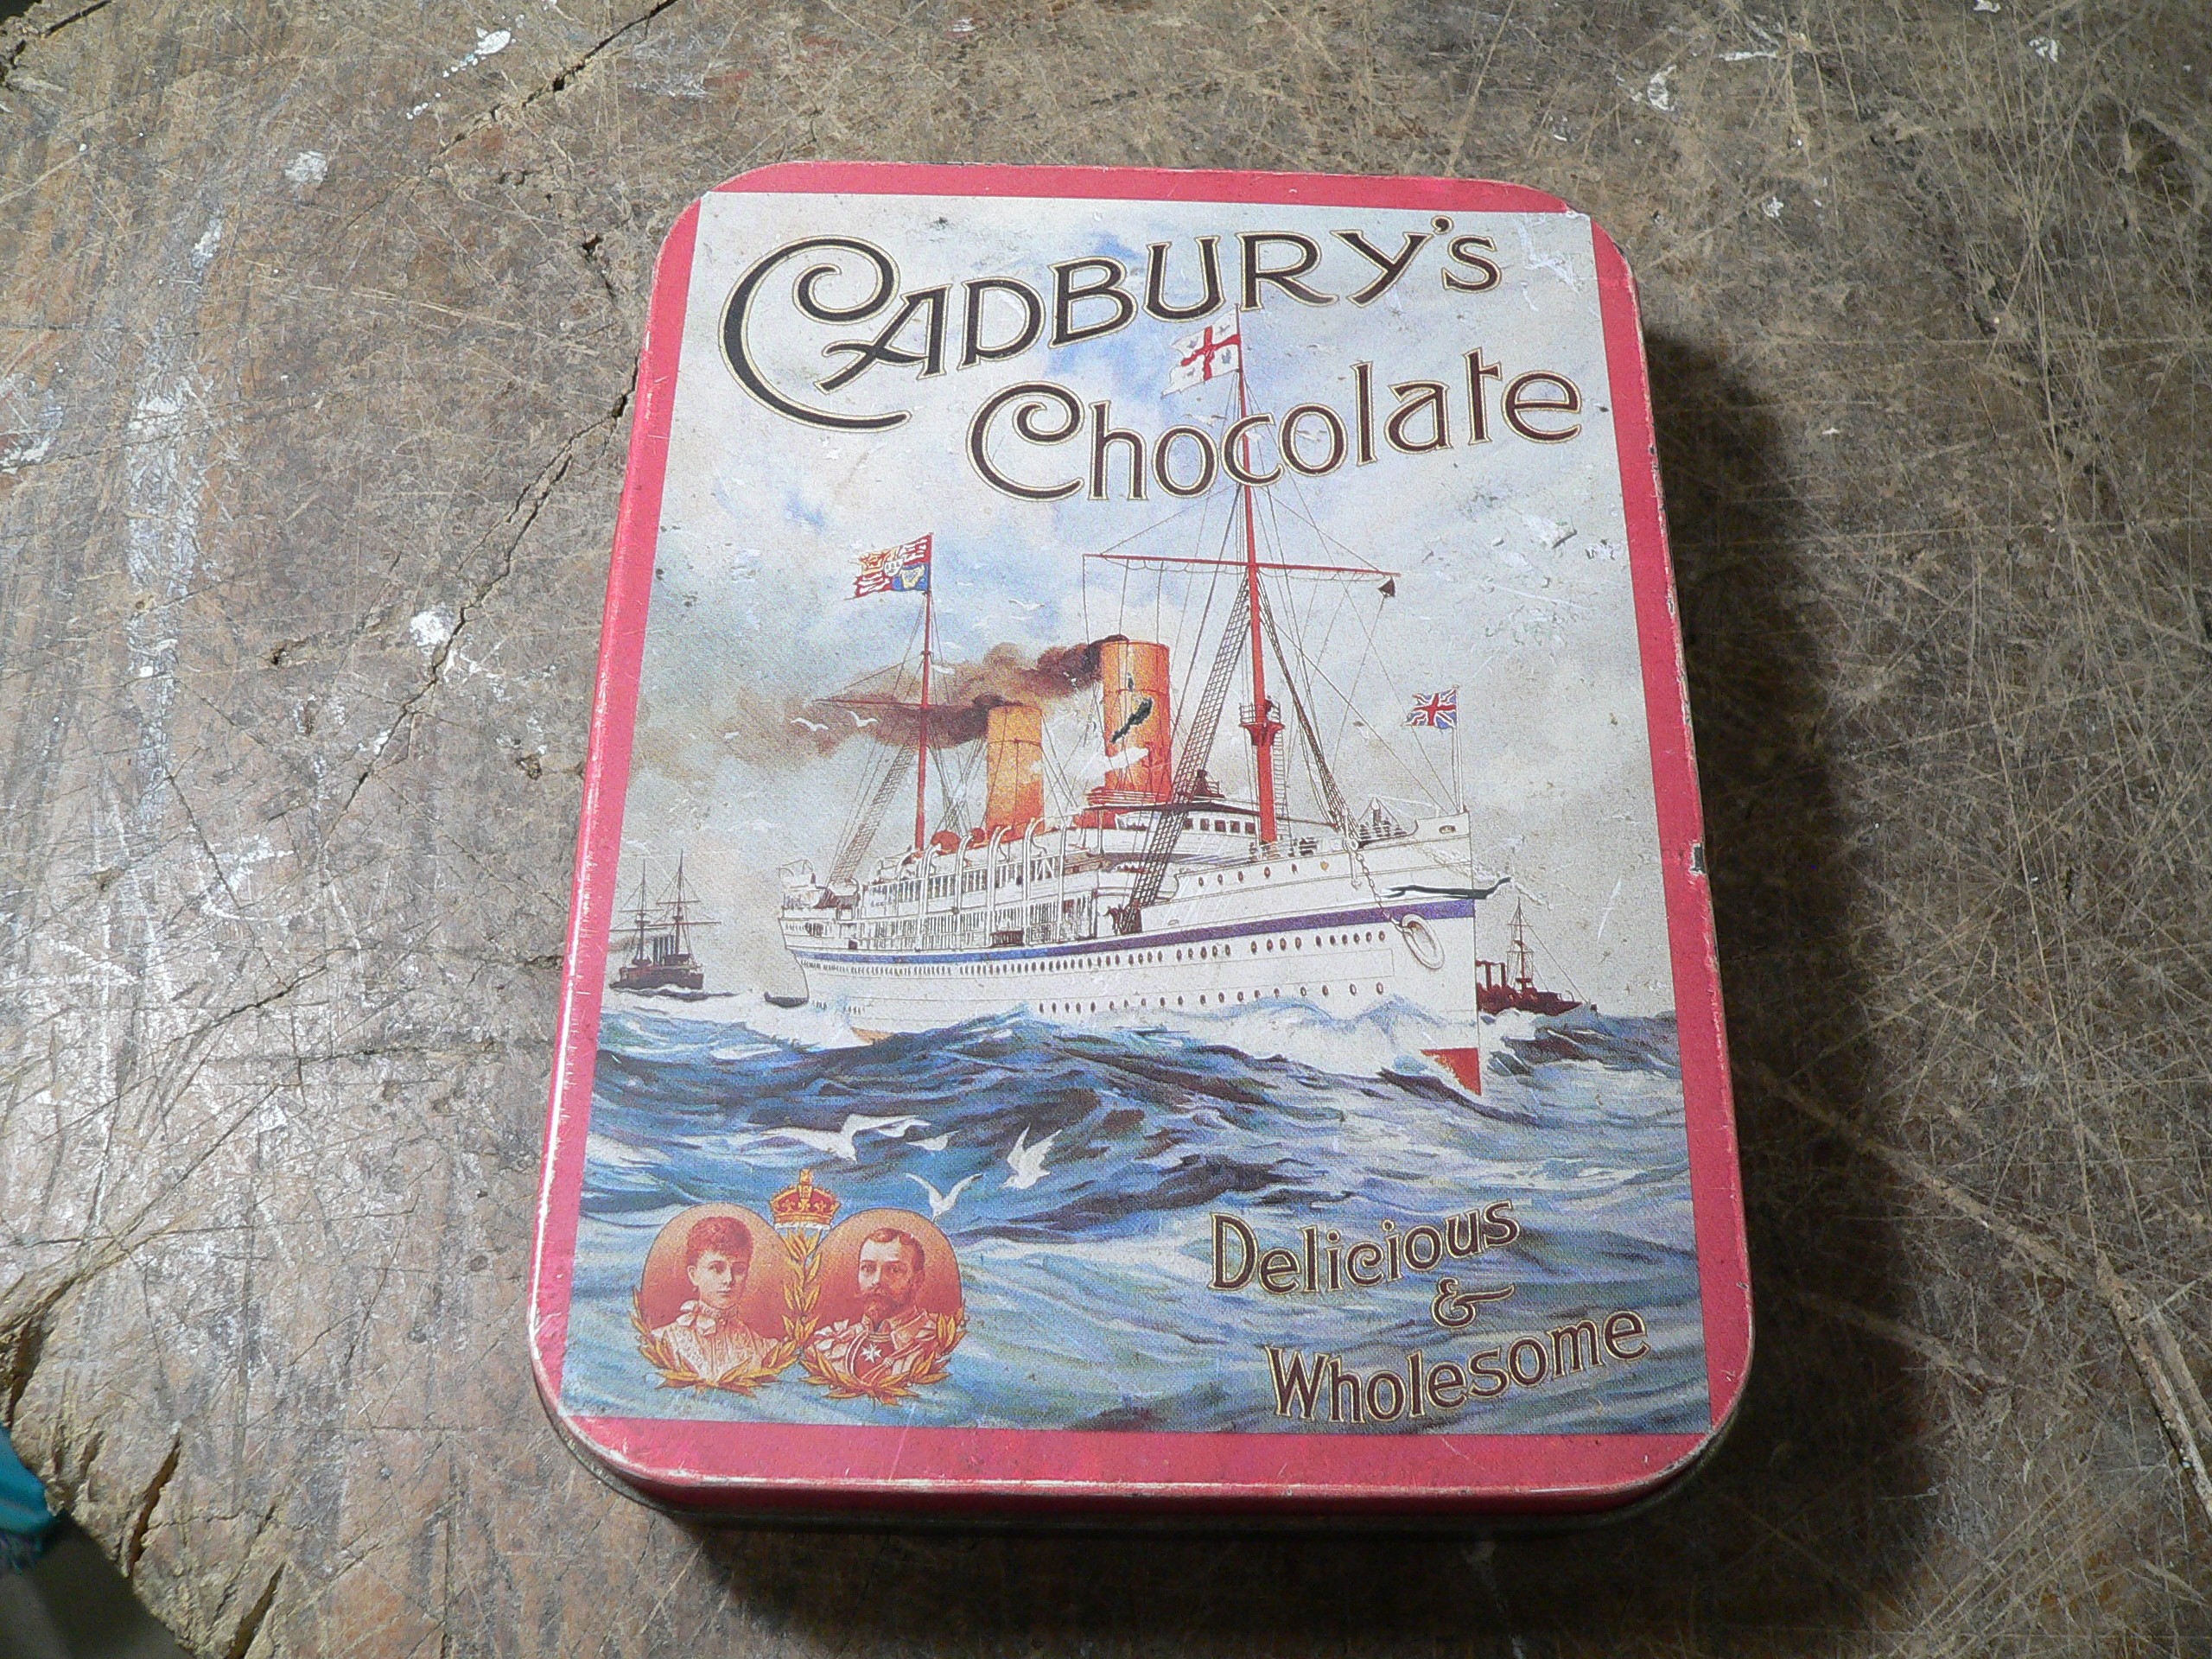 Boite cadbury's chocolate # 10264 